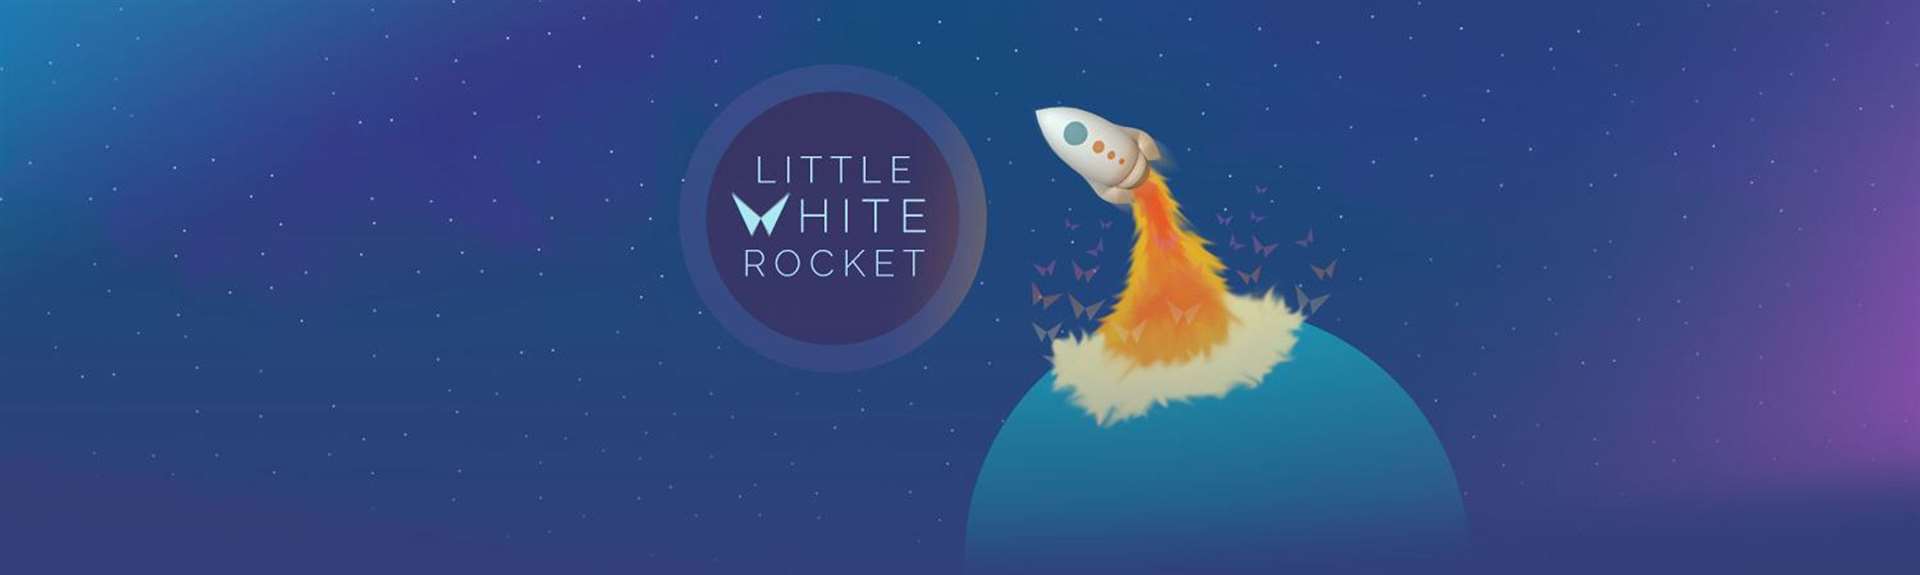 Little White Rocket. Picture: Handout/PA